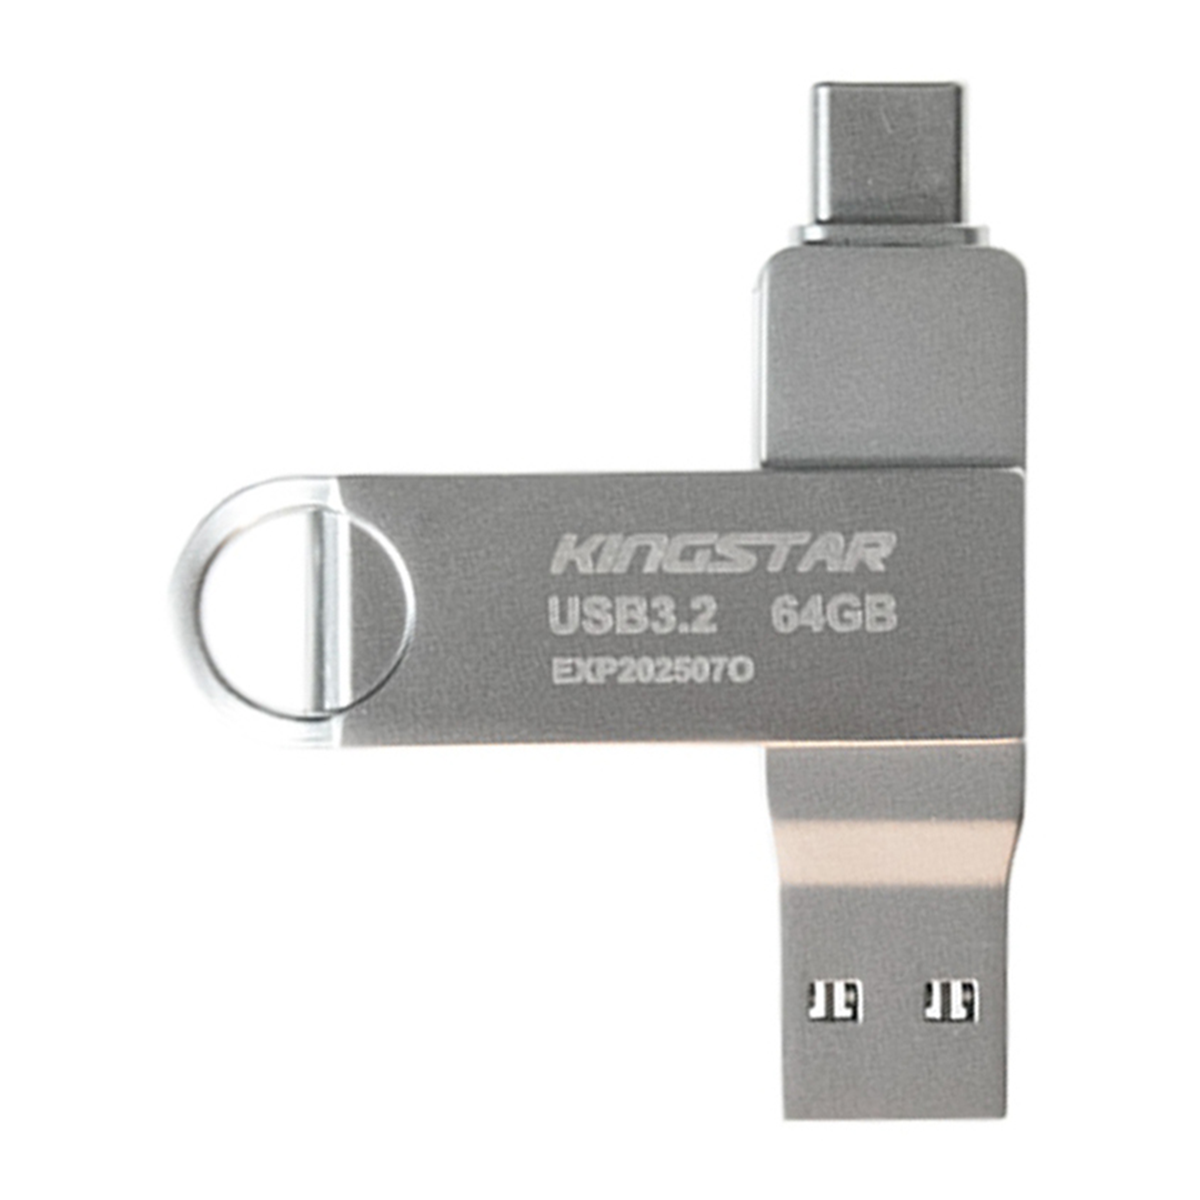 فلش مموری پاتریوت مدل C60 USB 3.2 ظرفیت 64 گیگابایت copy-small-image.png